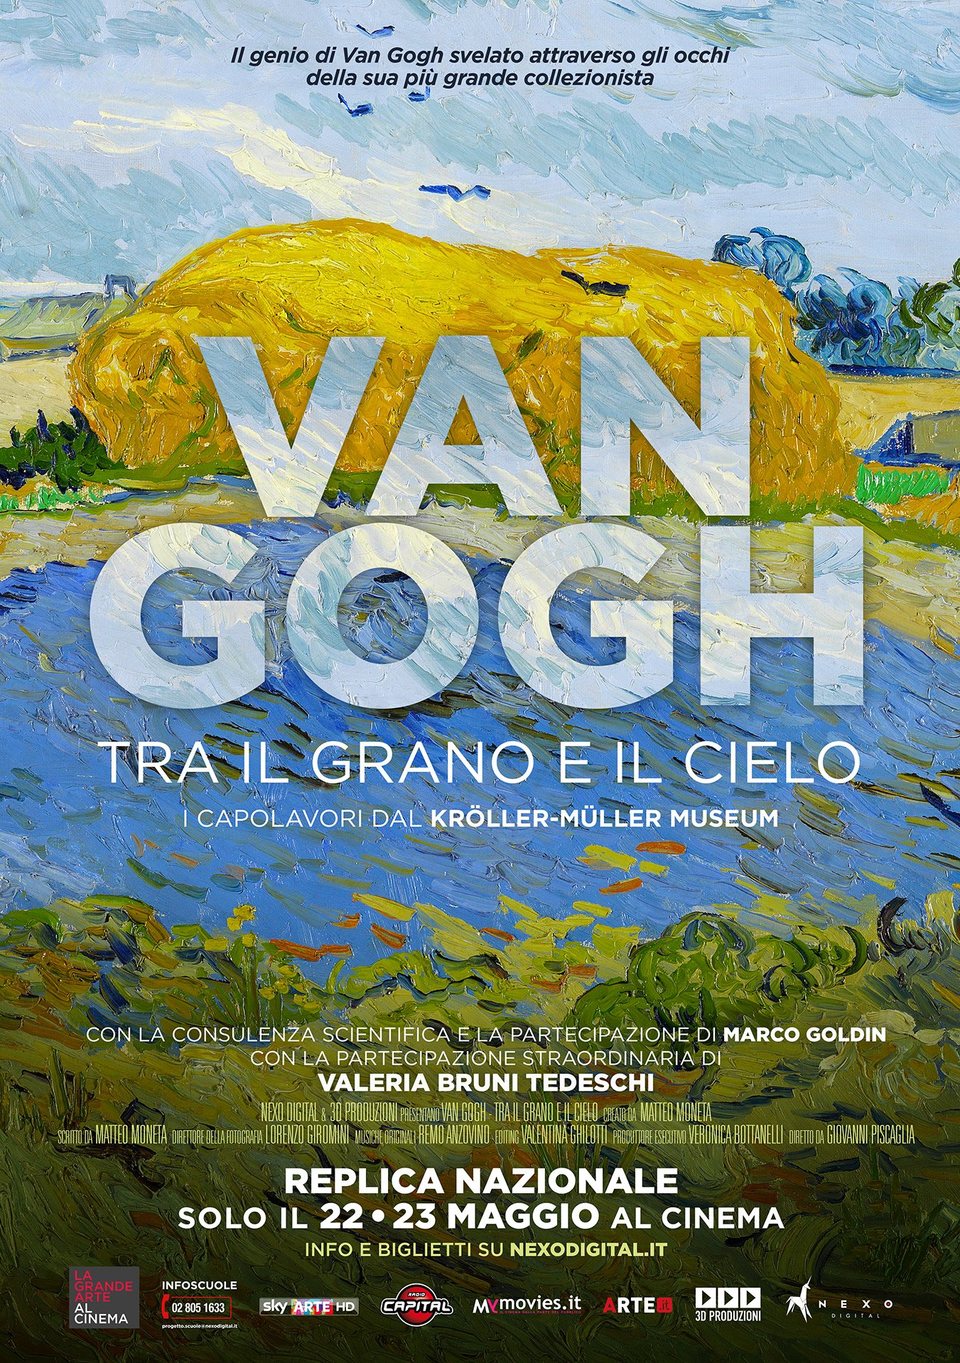 Cartel de Van Gogh de los campos de trigo bajo los cielos nublados - Original